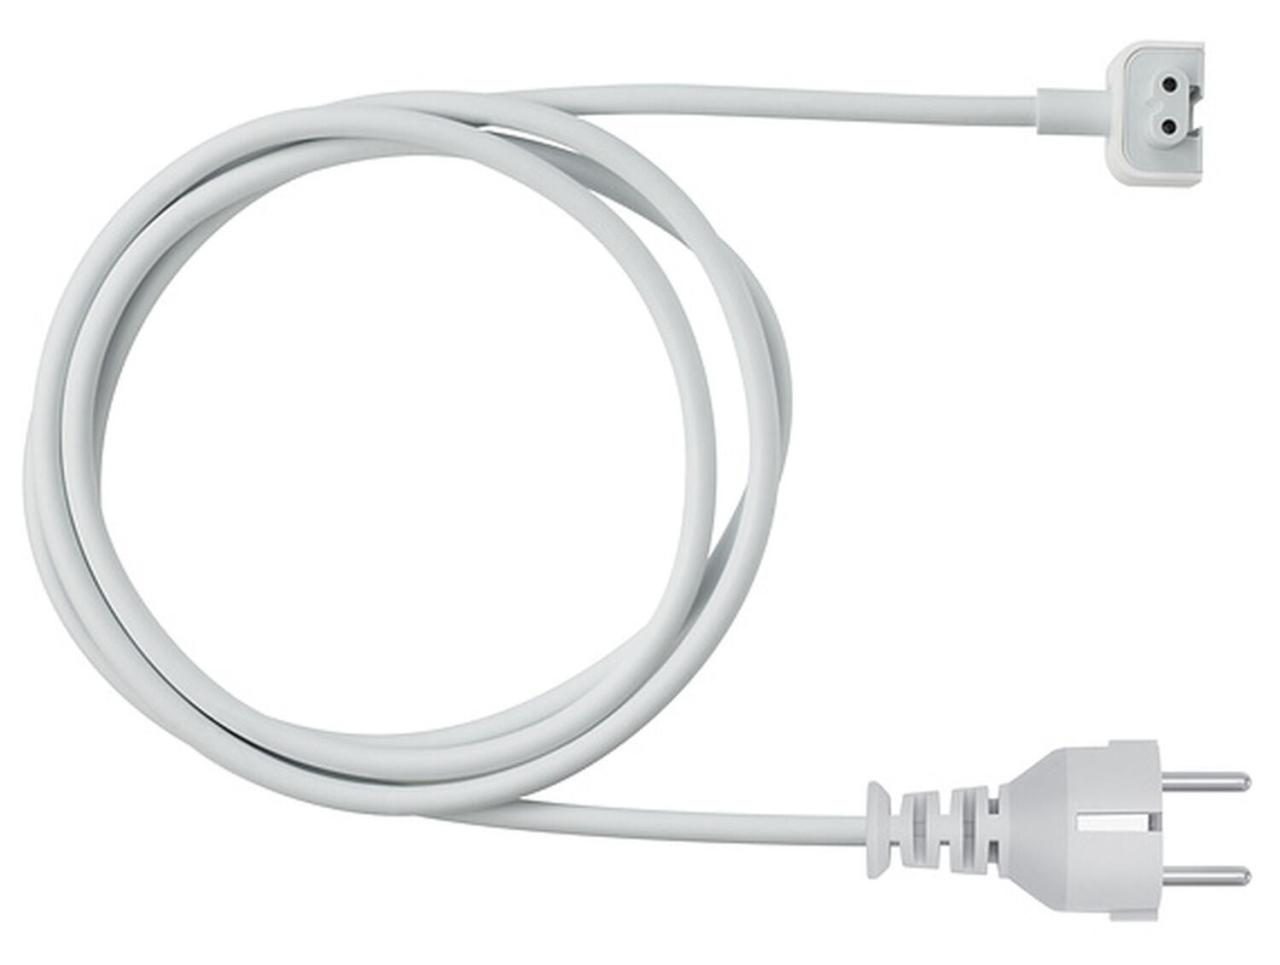 Apple Power Adapter Extension Kabel von Apple